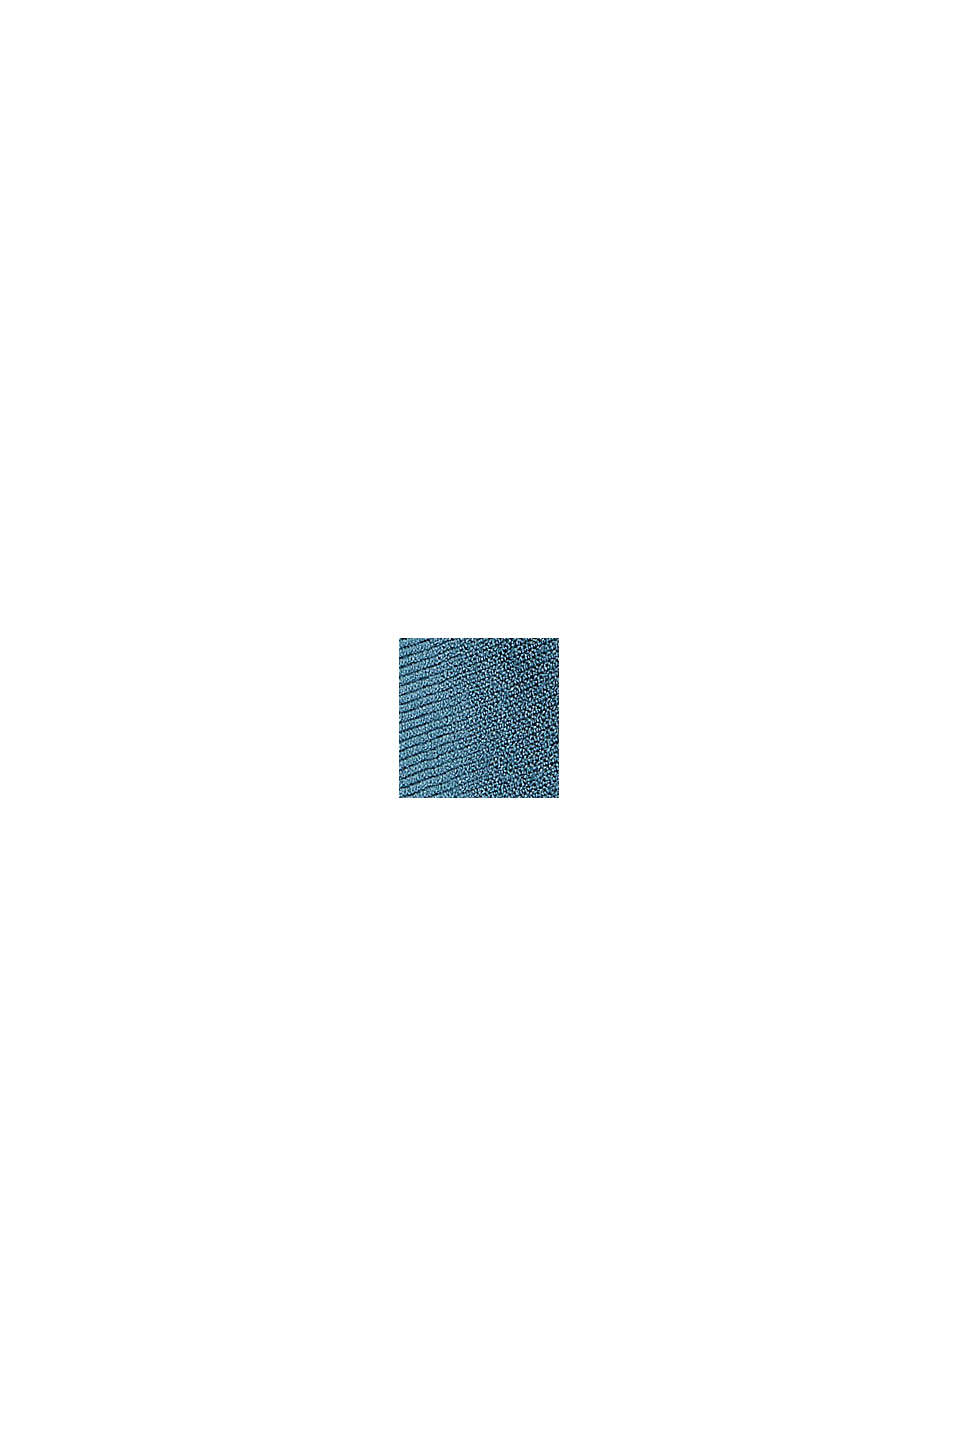 Sweter z rękawami a la nietoperz, LENZING™ ECOVERO™, PETROL BLUE, swatch